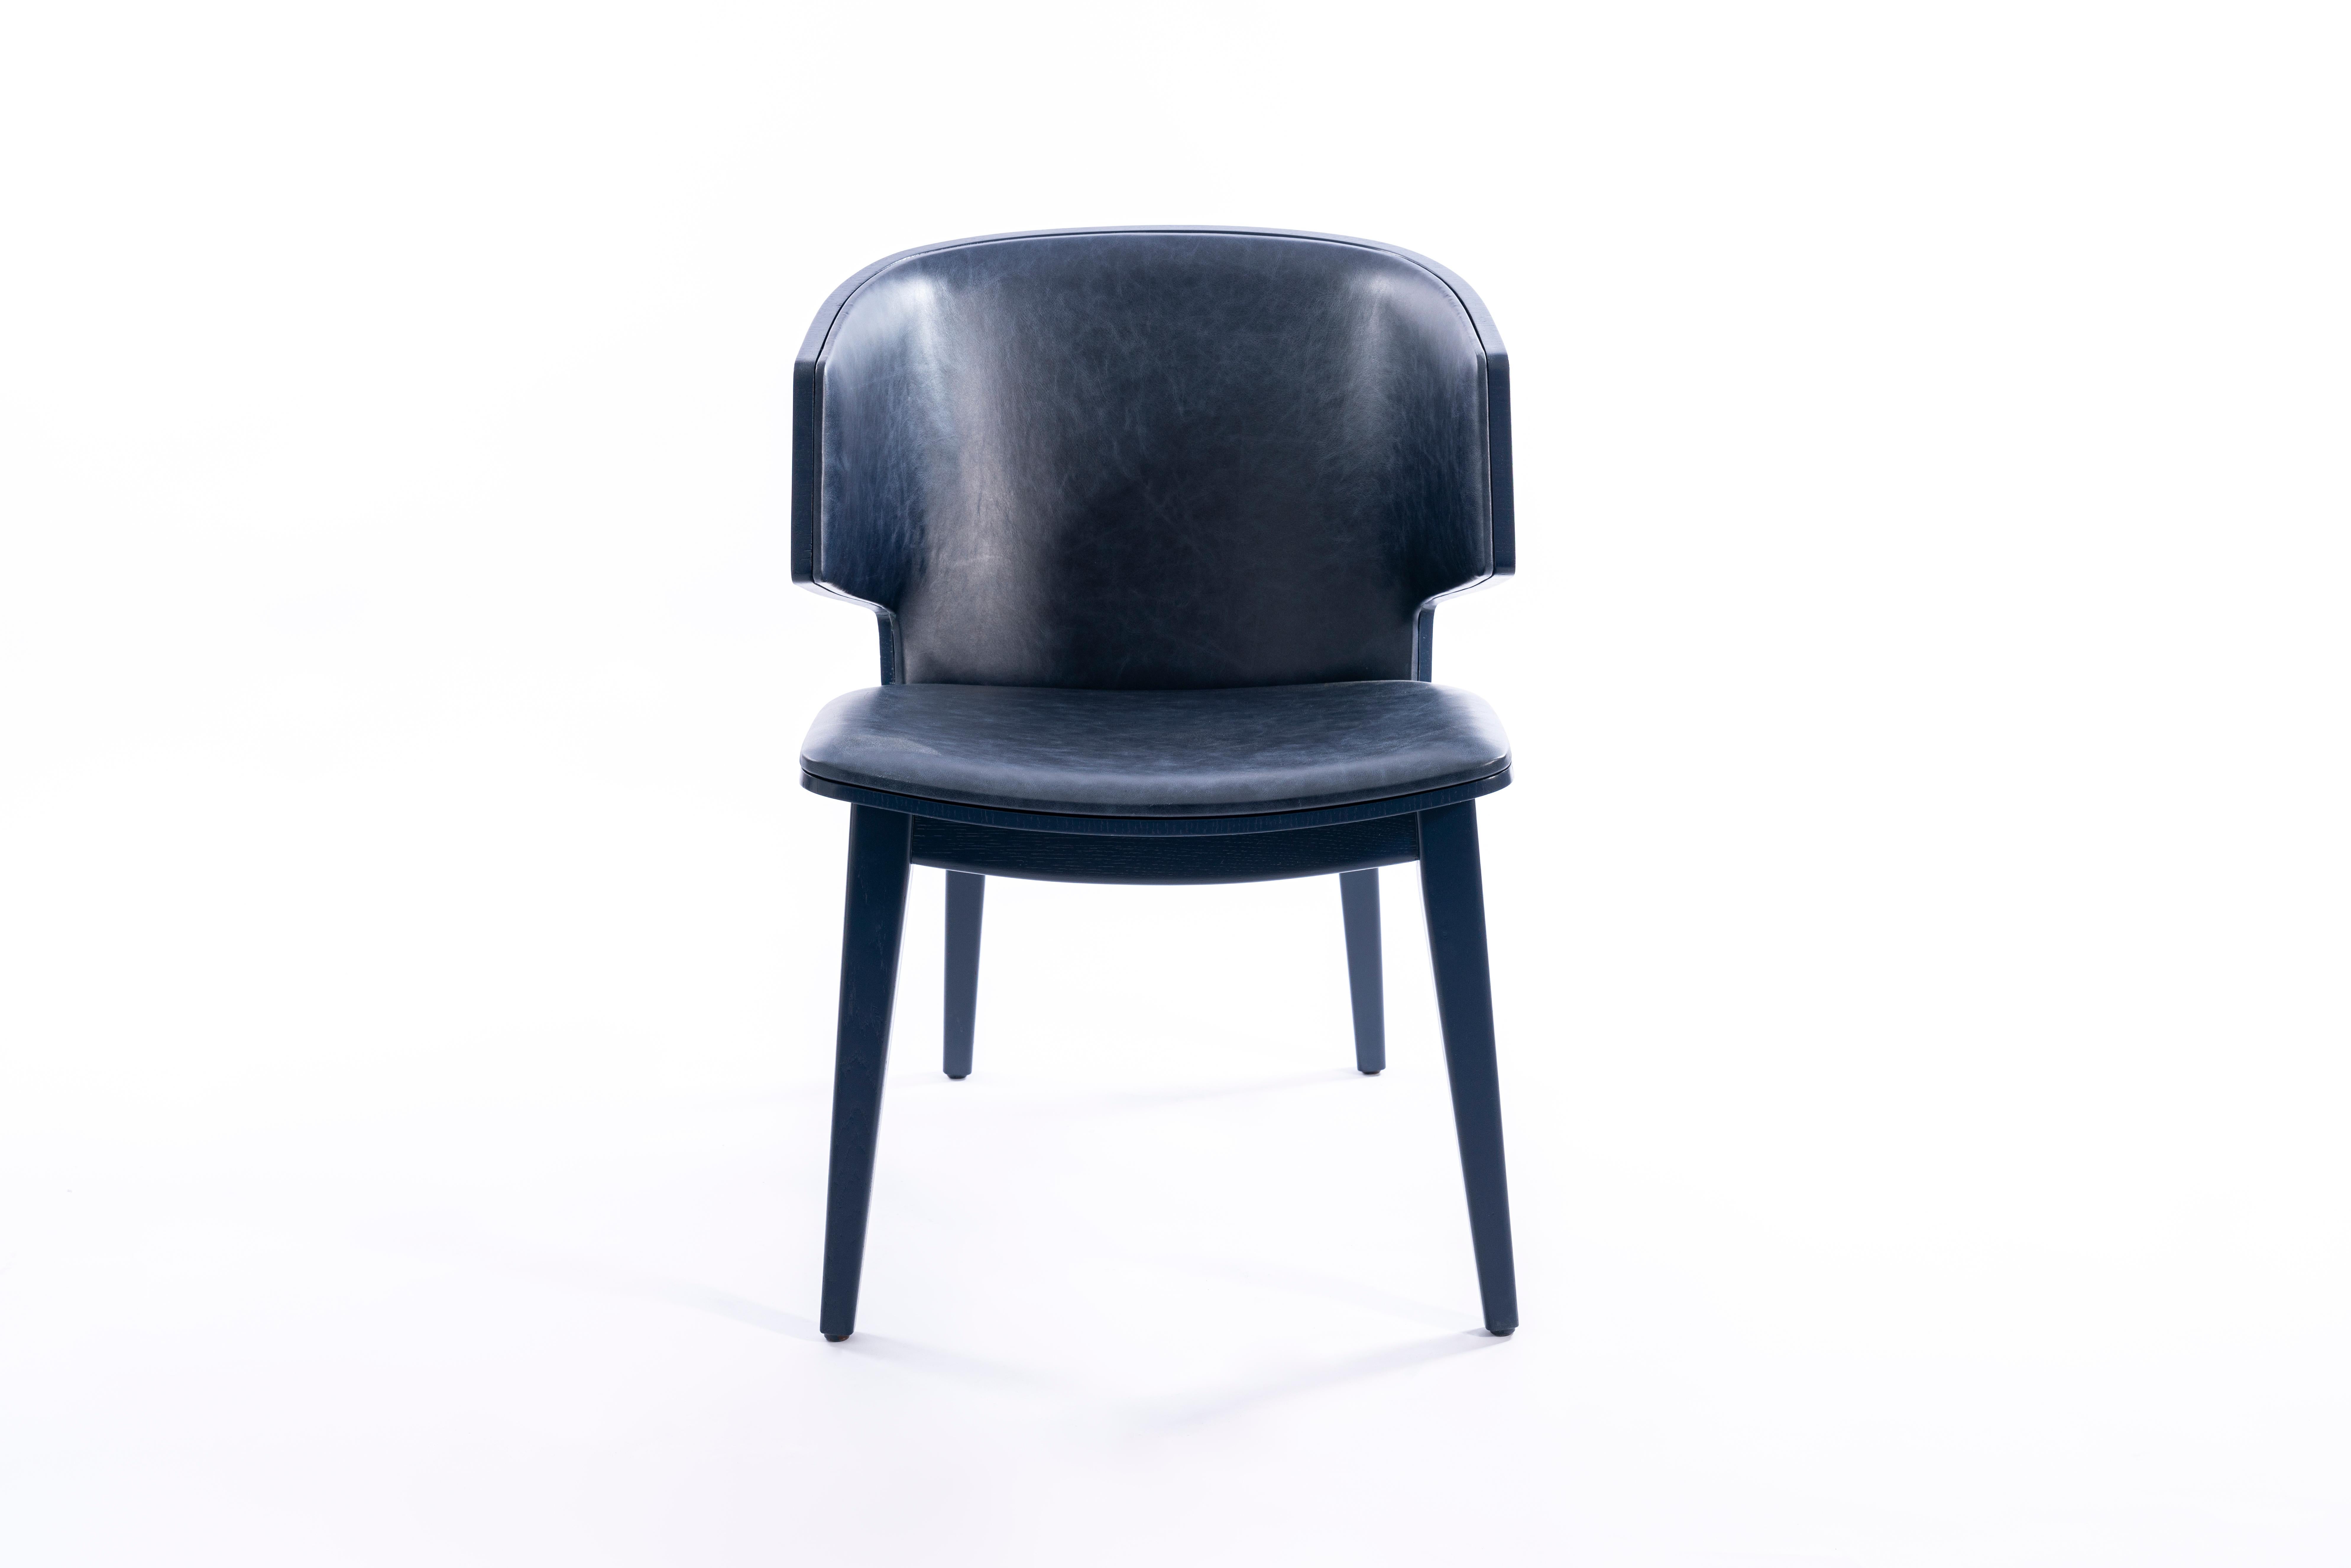 Sarr ist ein gemütlicher Sessel, der mit seinem Korpus aus massivem Nussbaum/Eiche und seiner Kaschmir/Leder-Polsterung ein Maximum an Komfort bietet.
Esszimmerstuhl, Bürostuhl. Bequemer Esszimmerstuhl